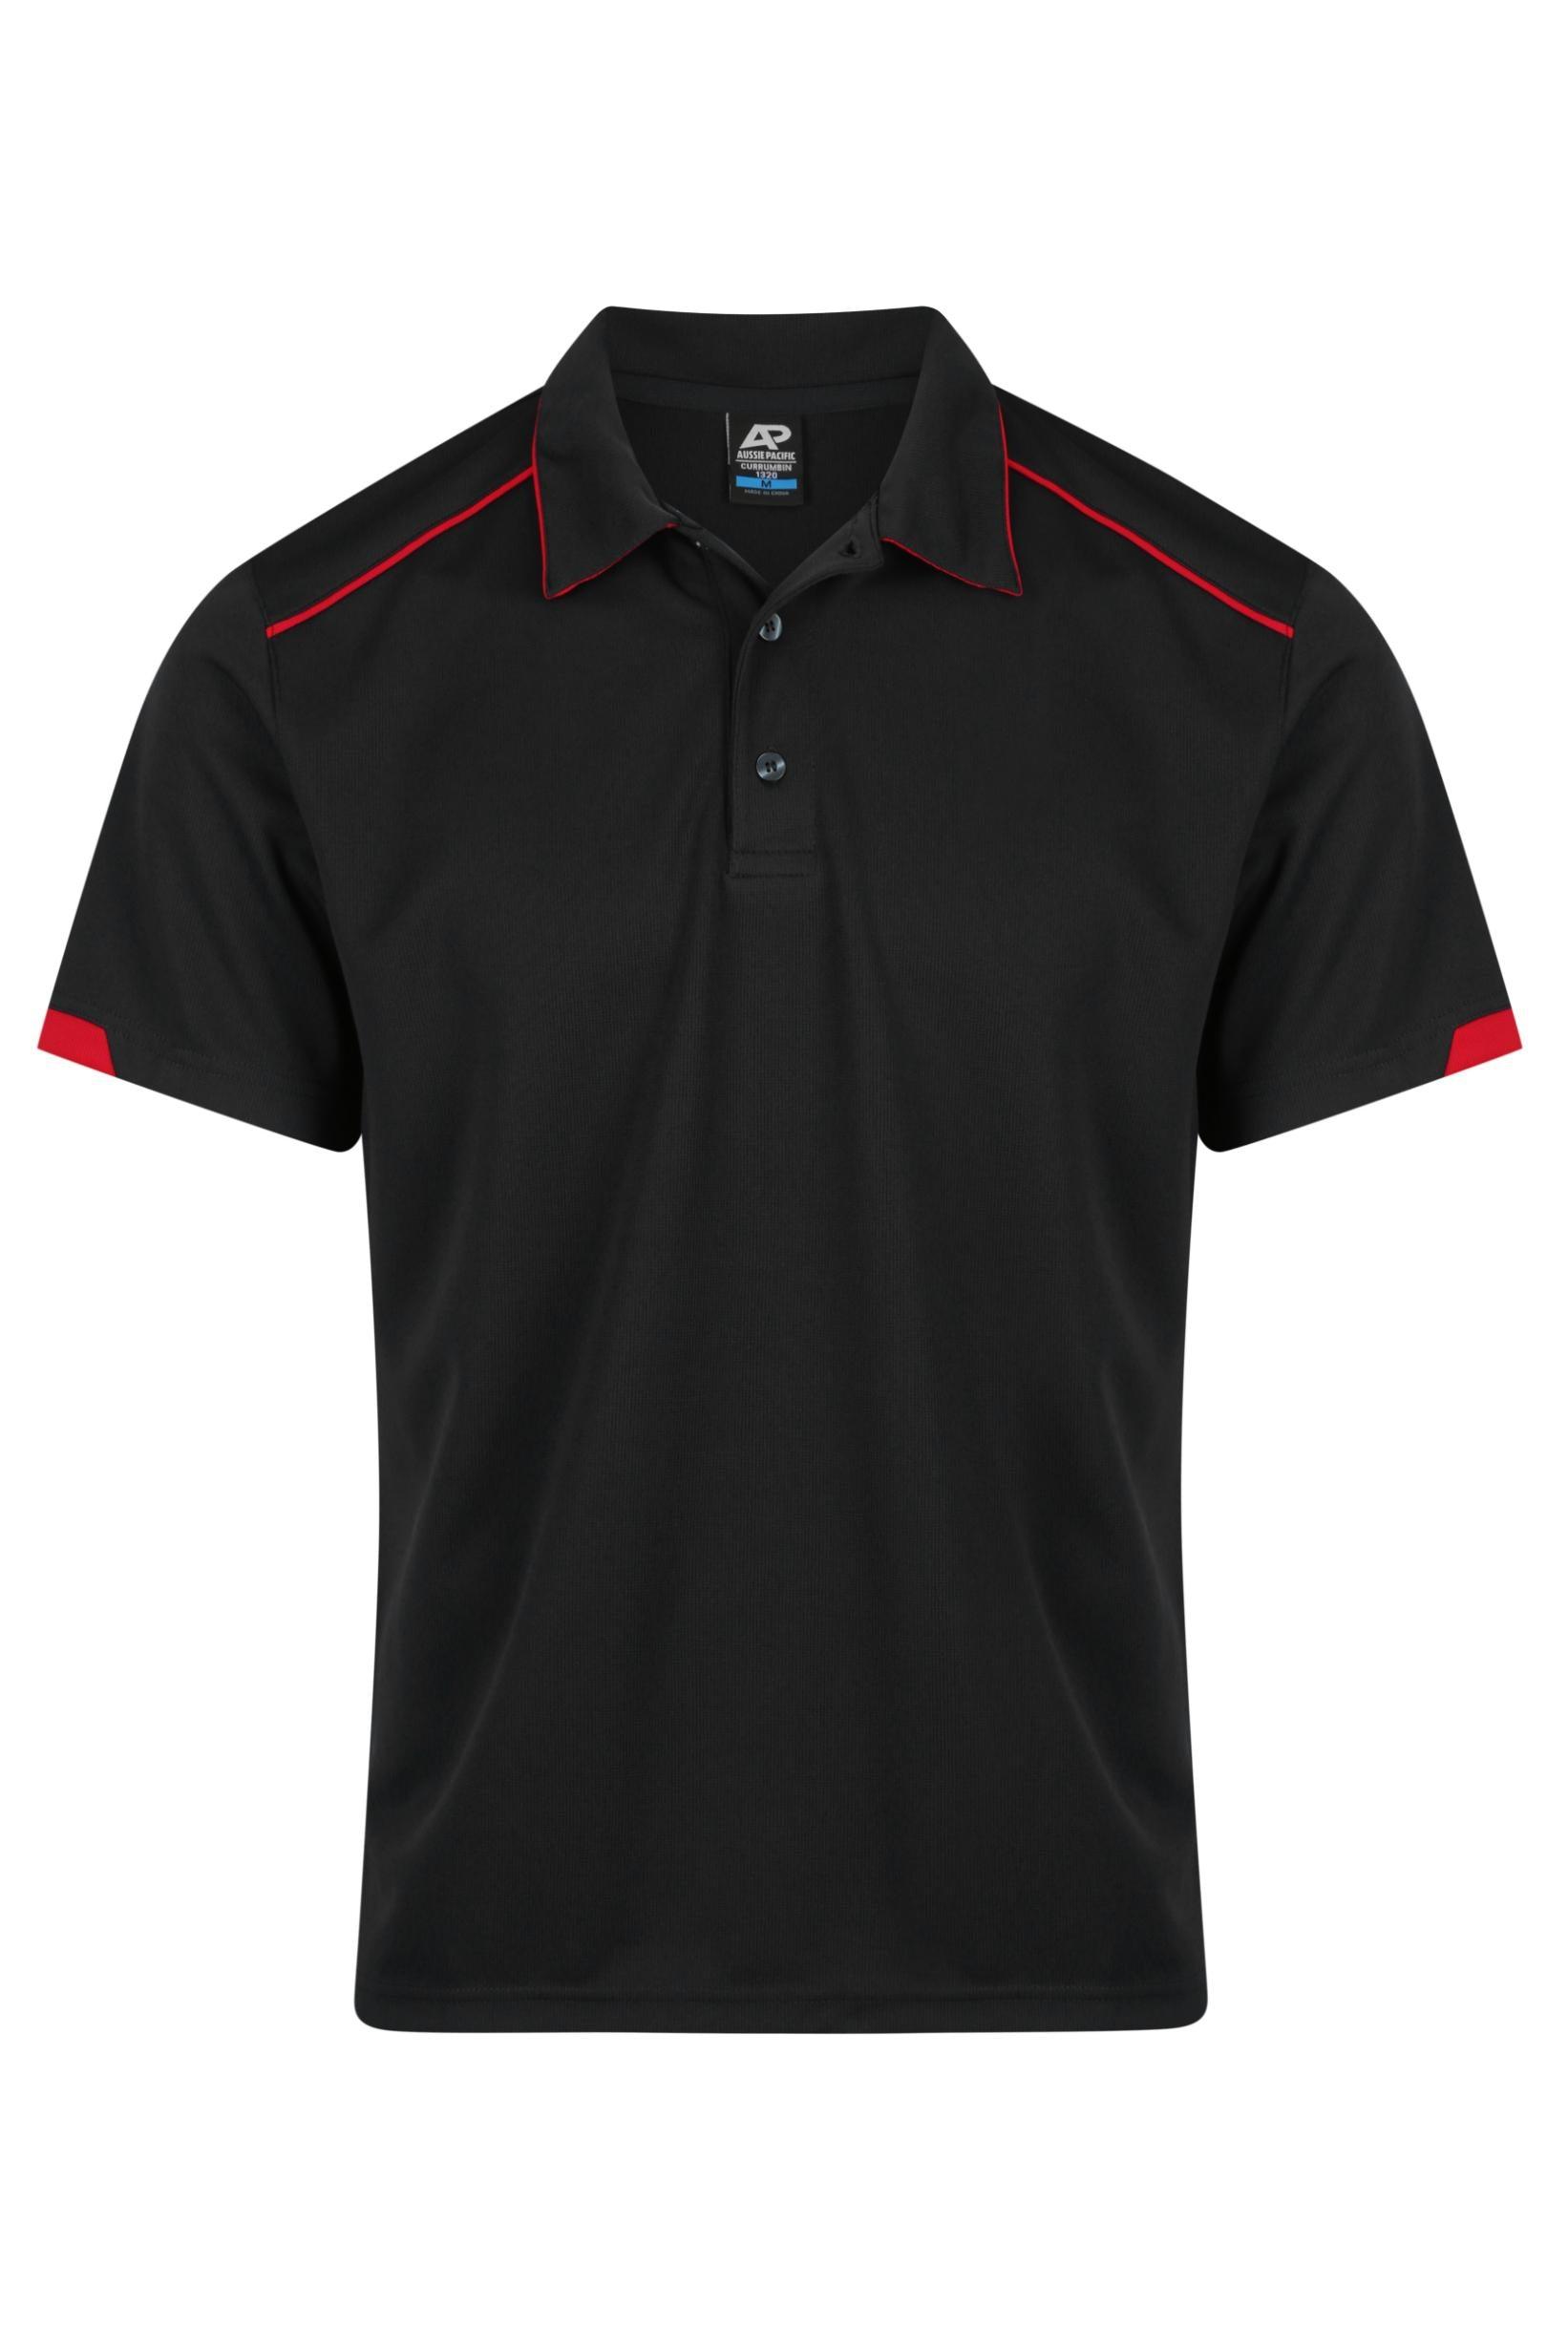 Currumbin Workwear Polo Shirts - Black/Red